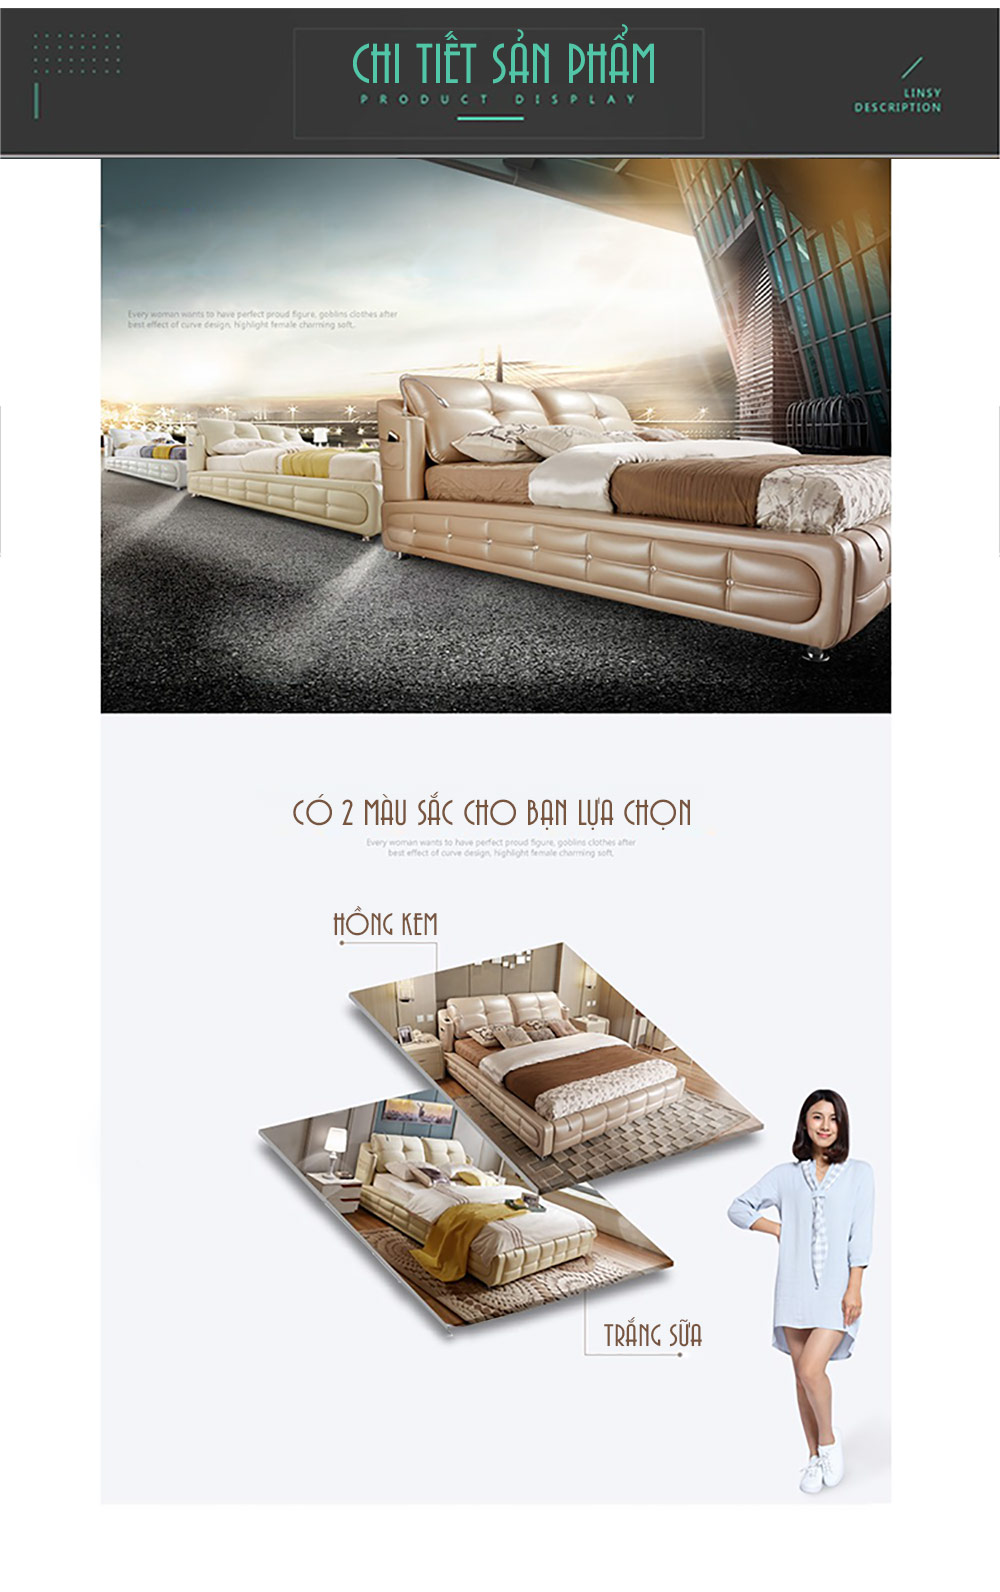 Giường ngủ đa năng thông minh phong cách hiện đại cao cấp G18